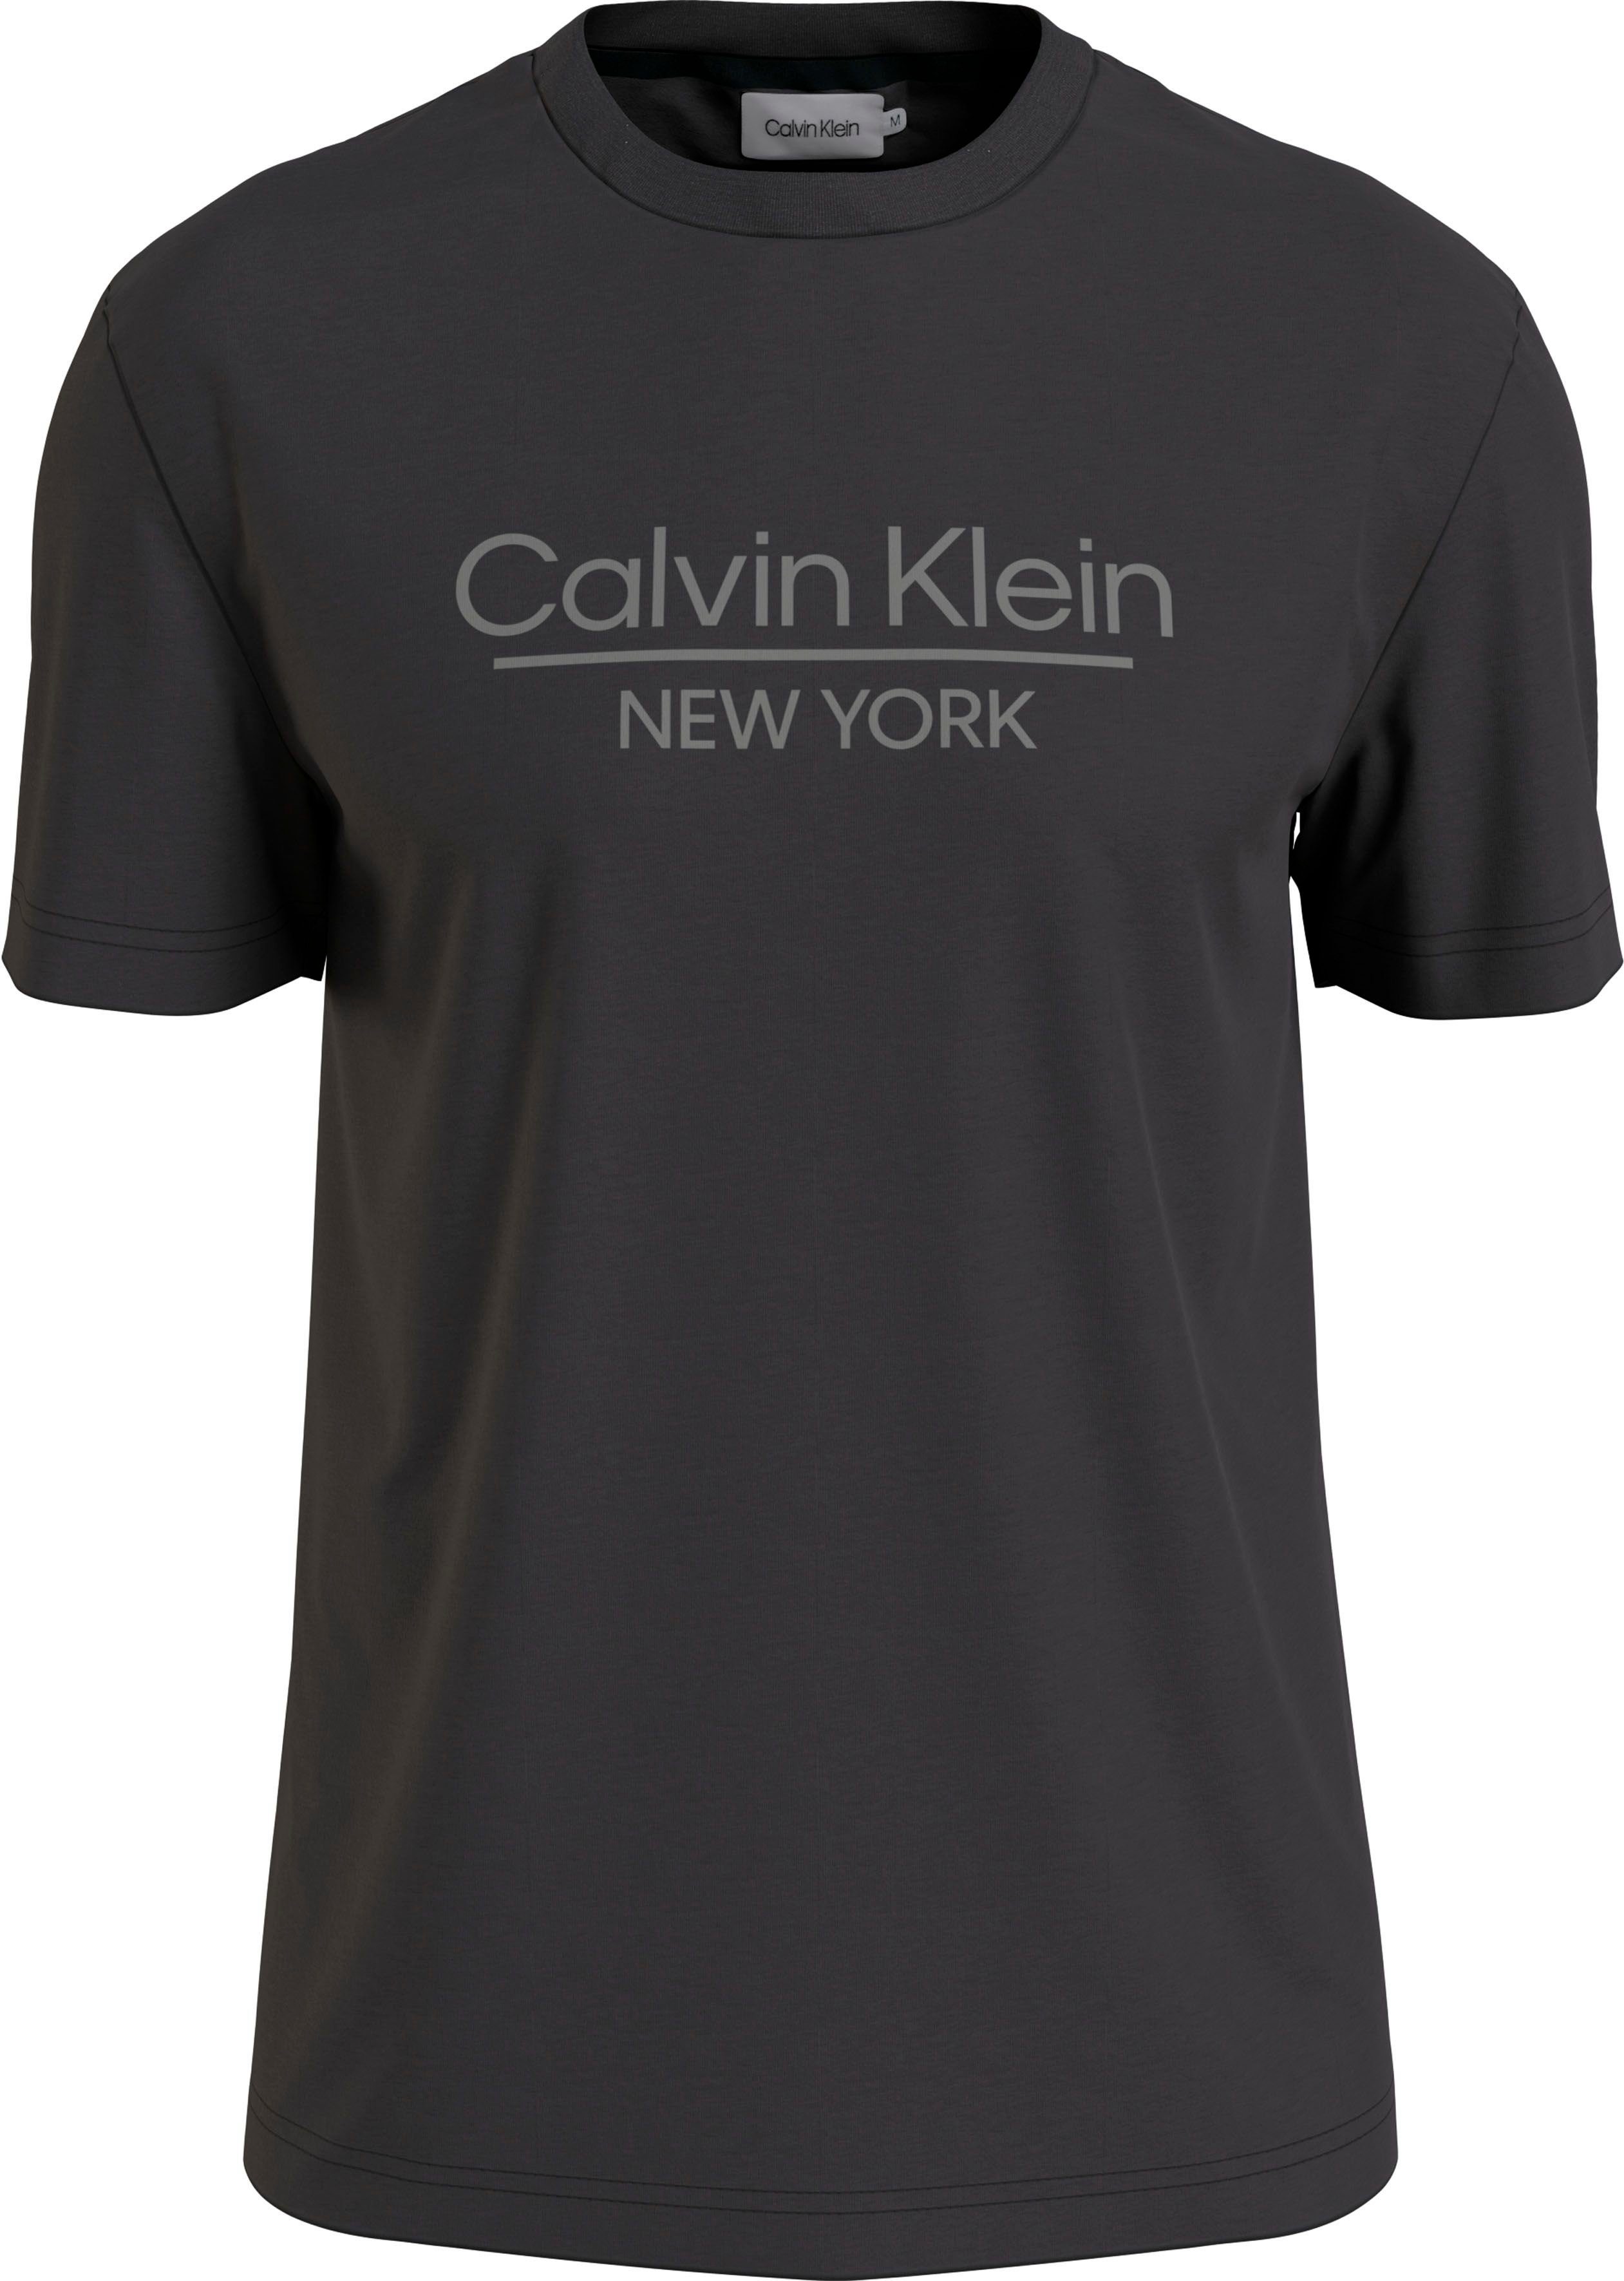 Calvin Klein T-Shirt Herren online kaufen | OTTO